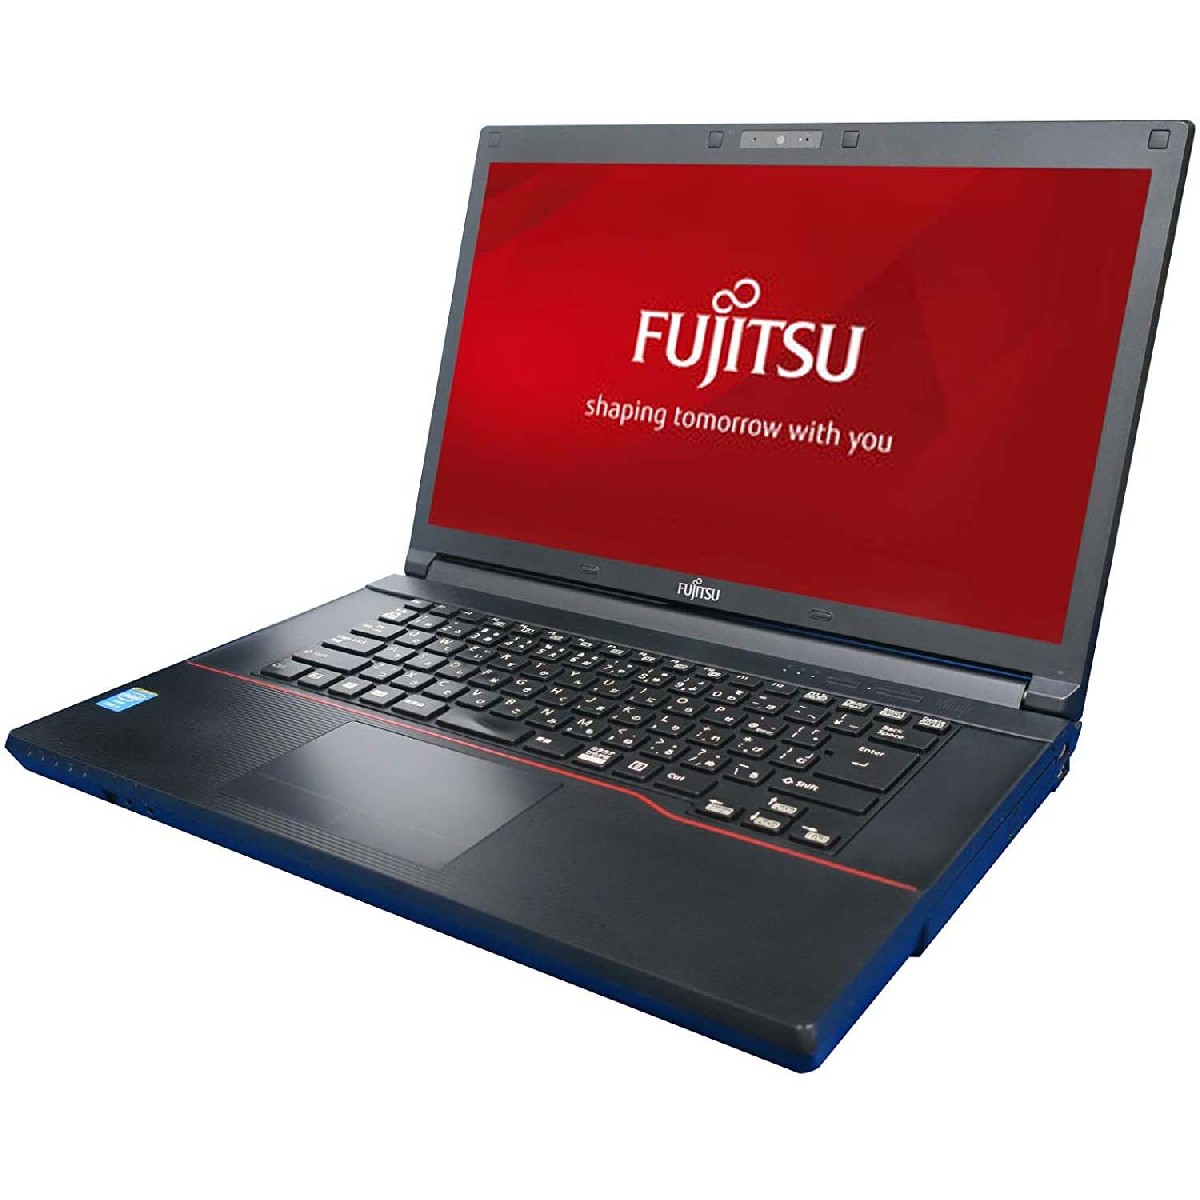 Refurbished Φορητός Υπολογιστής Fujitsu A574 15.6″ i5-4200M 8GB DDR3 / 256GB SSD με Webcam και Ελληνικό Πληκτρολογιο